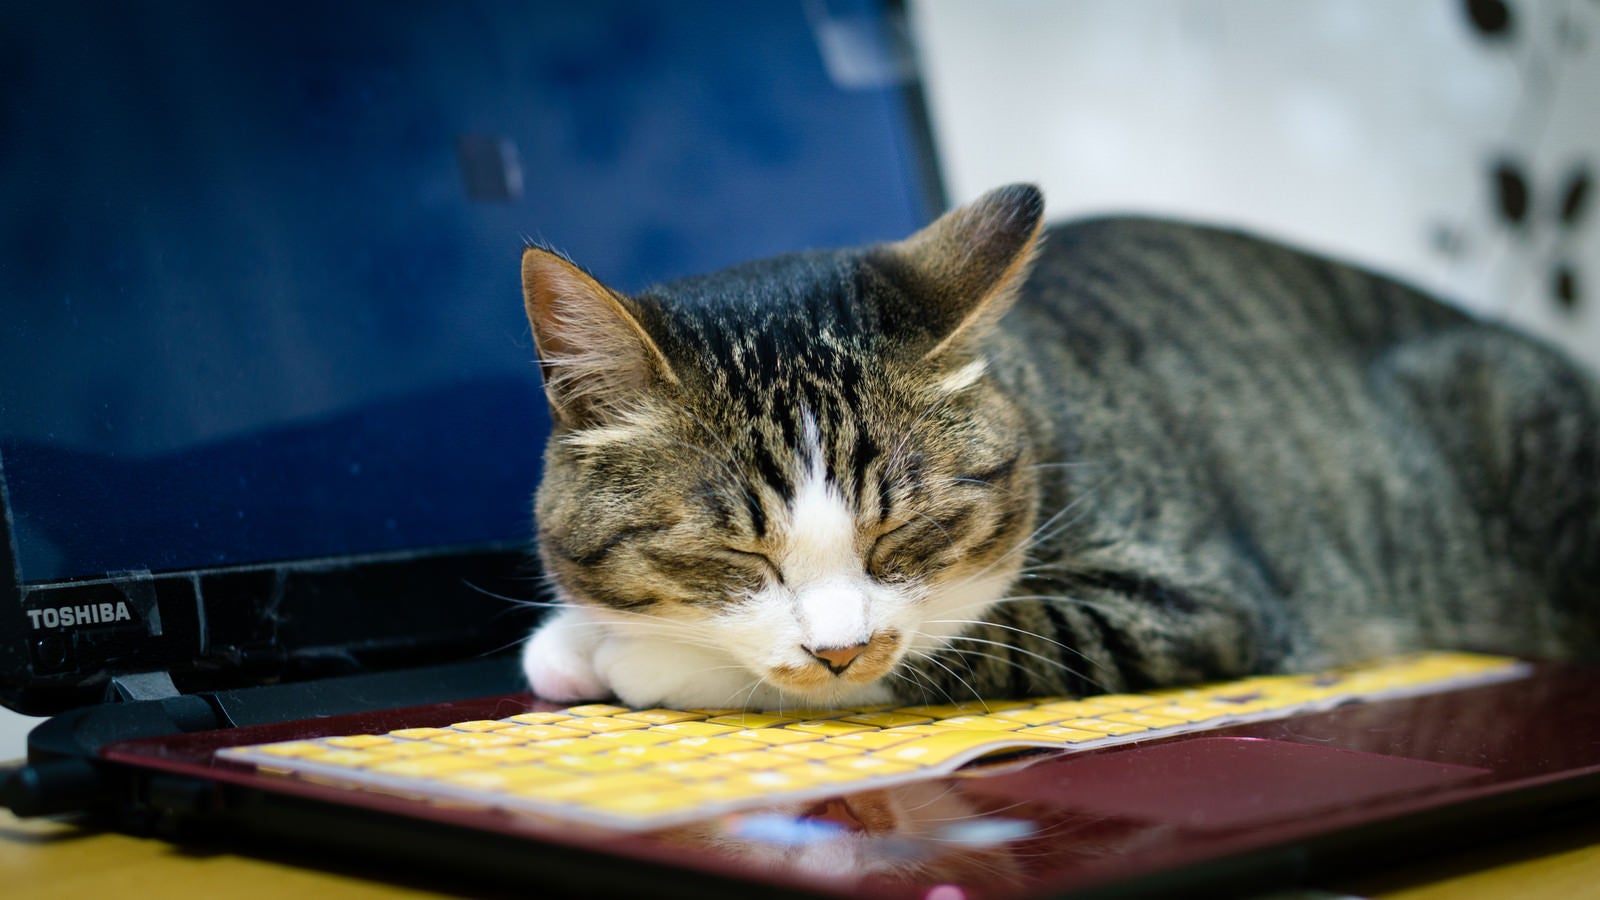 「ノートPCの熱が暖かくて、その上でうたた寝する猫」の写真